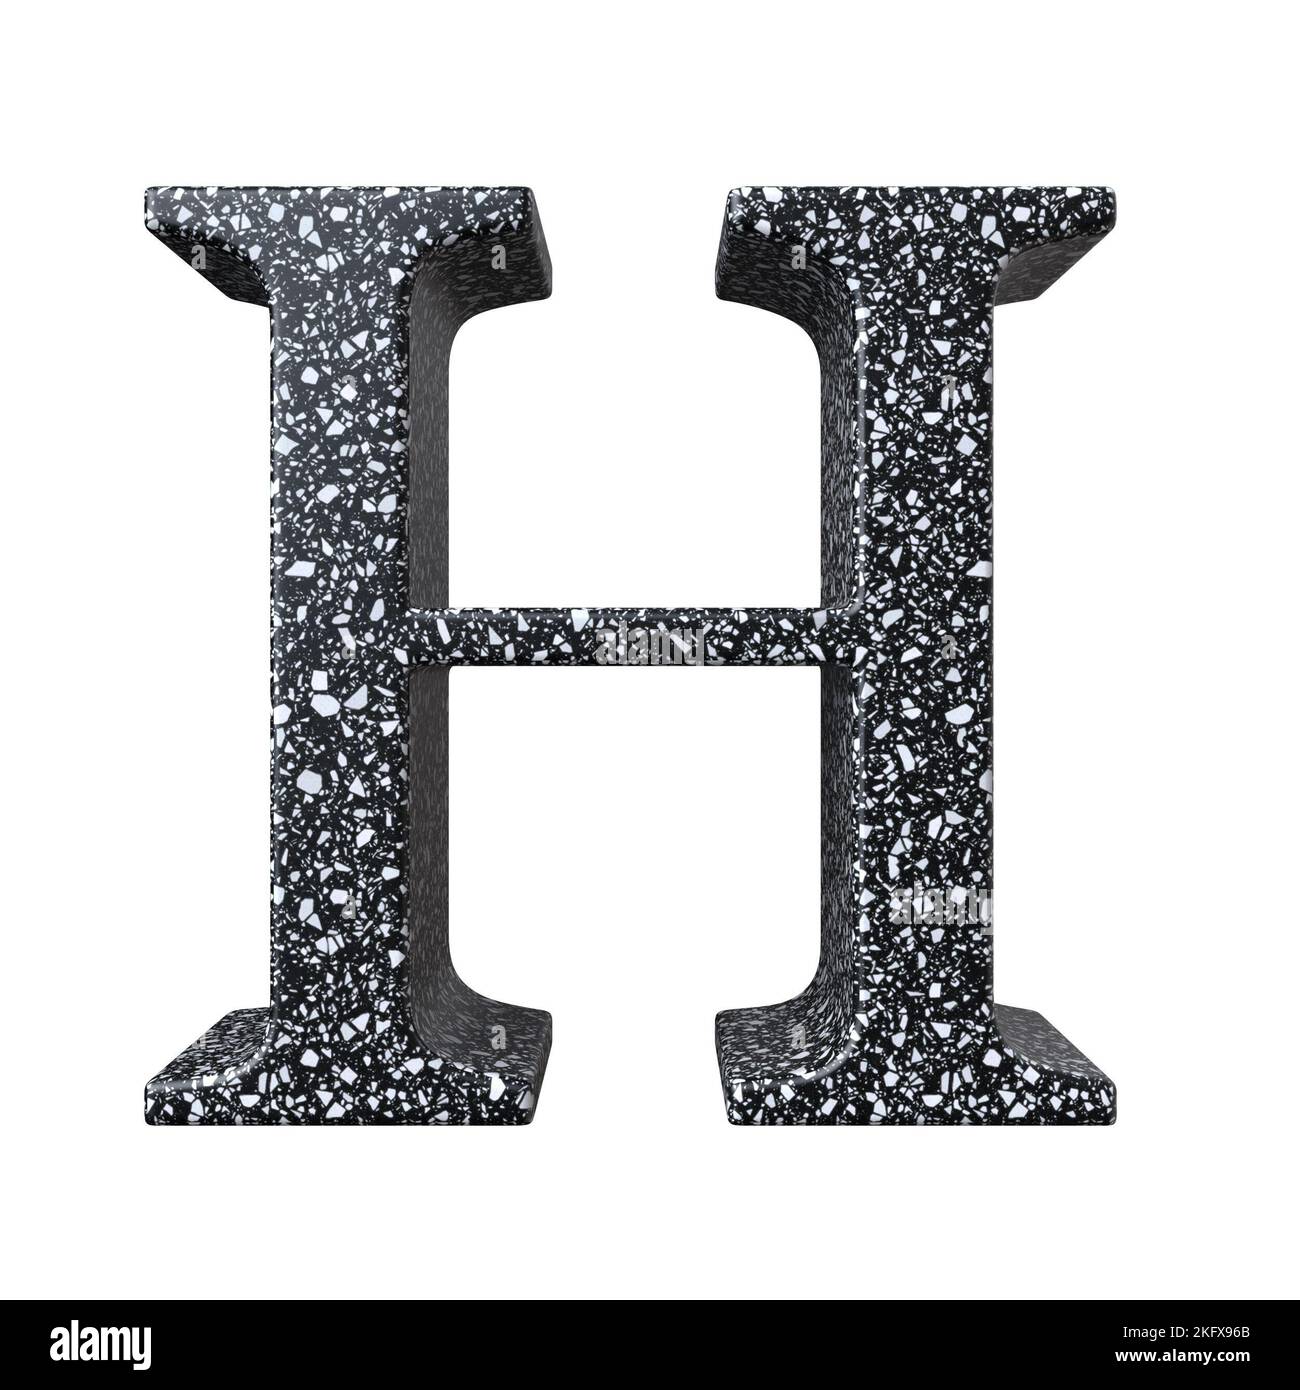 Une lettre H de 3D rendu de matériau de granit isolé sur fond blanc Banque D'Images